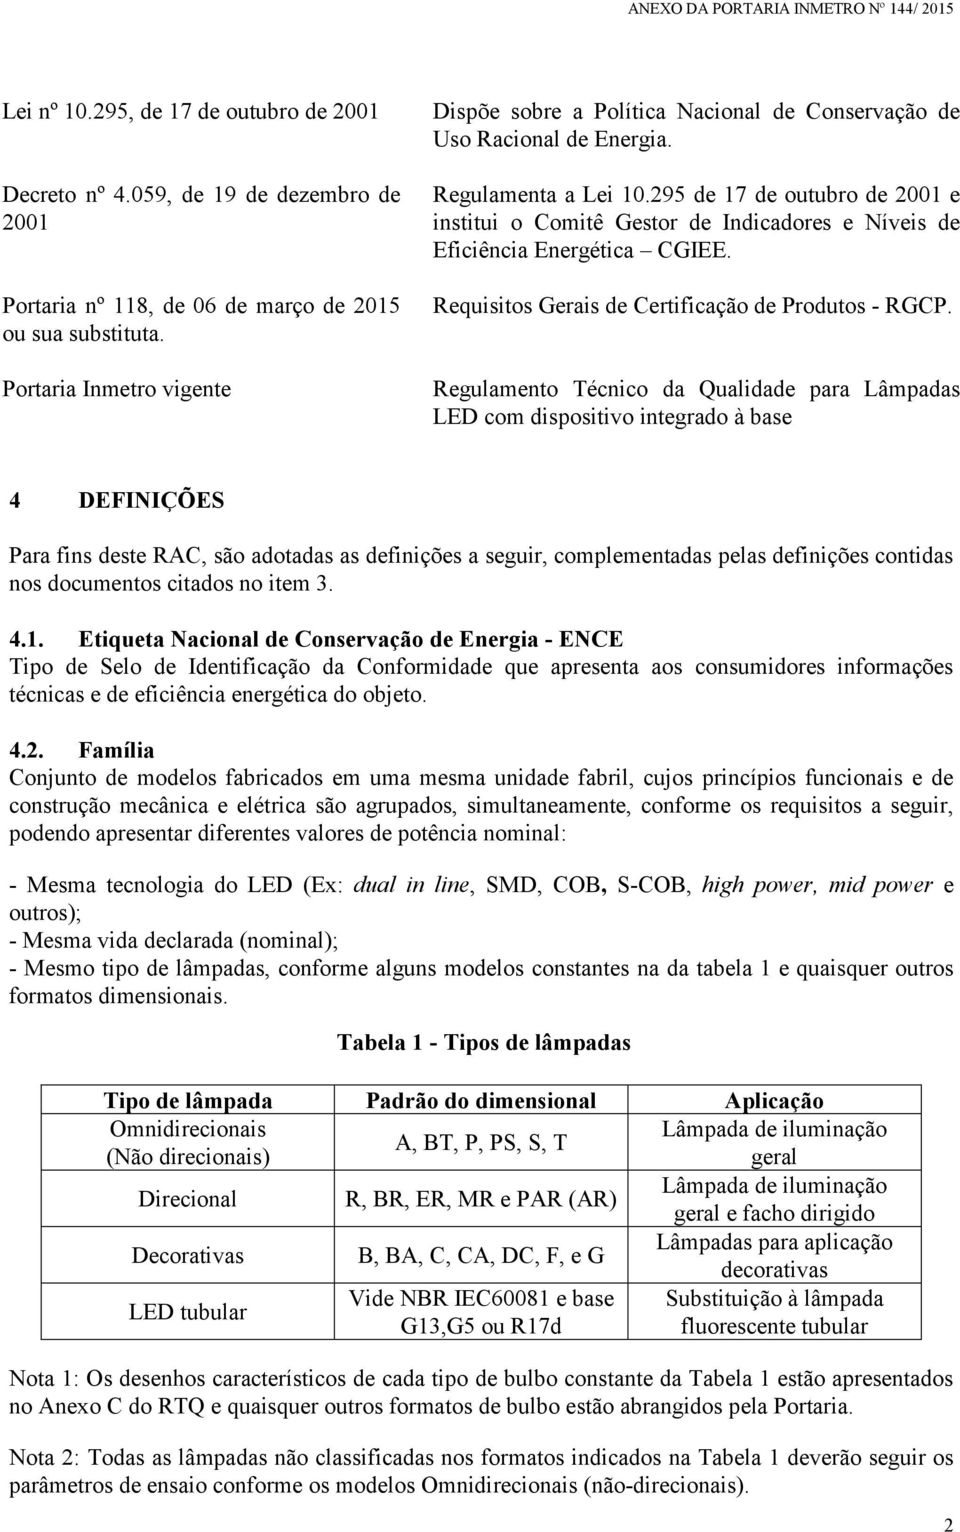 295 de 17 de outubro de 2001 e institui o Comitê Gestor de Indicadores e Níveis de Eficiência Energética CGIEE. Requisitos Gerais de Certificação de Produtos - RGCP.